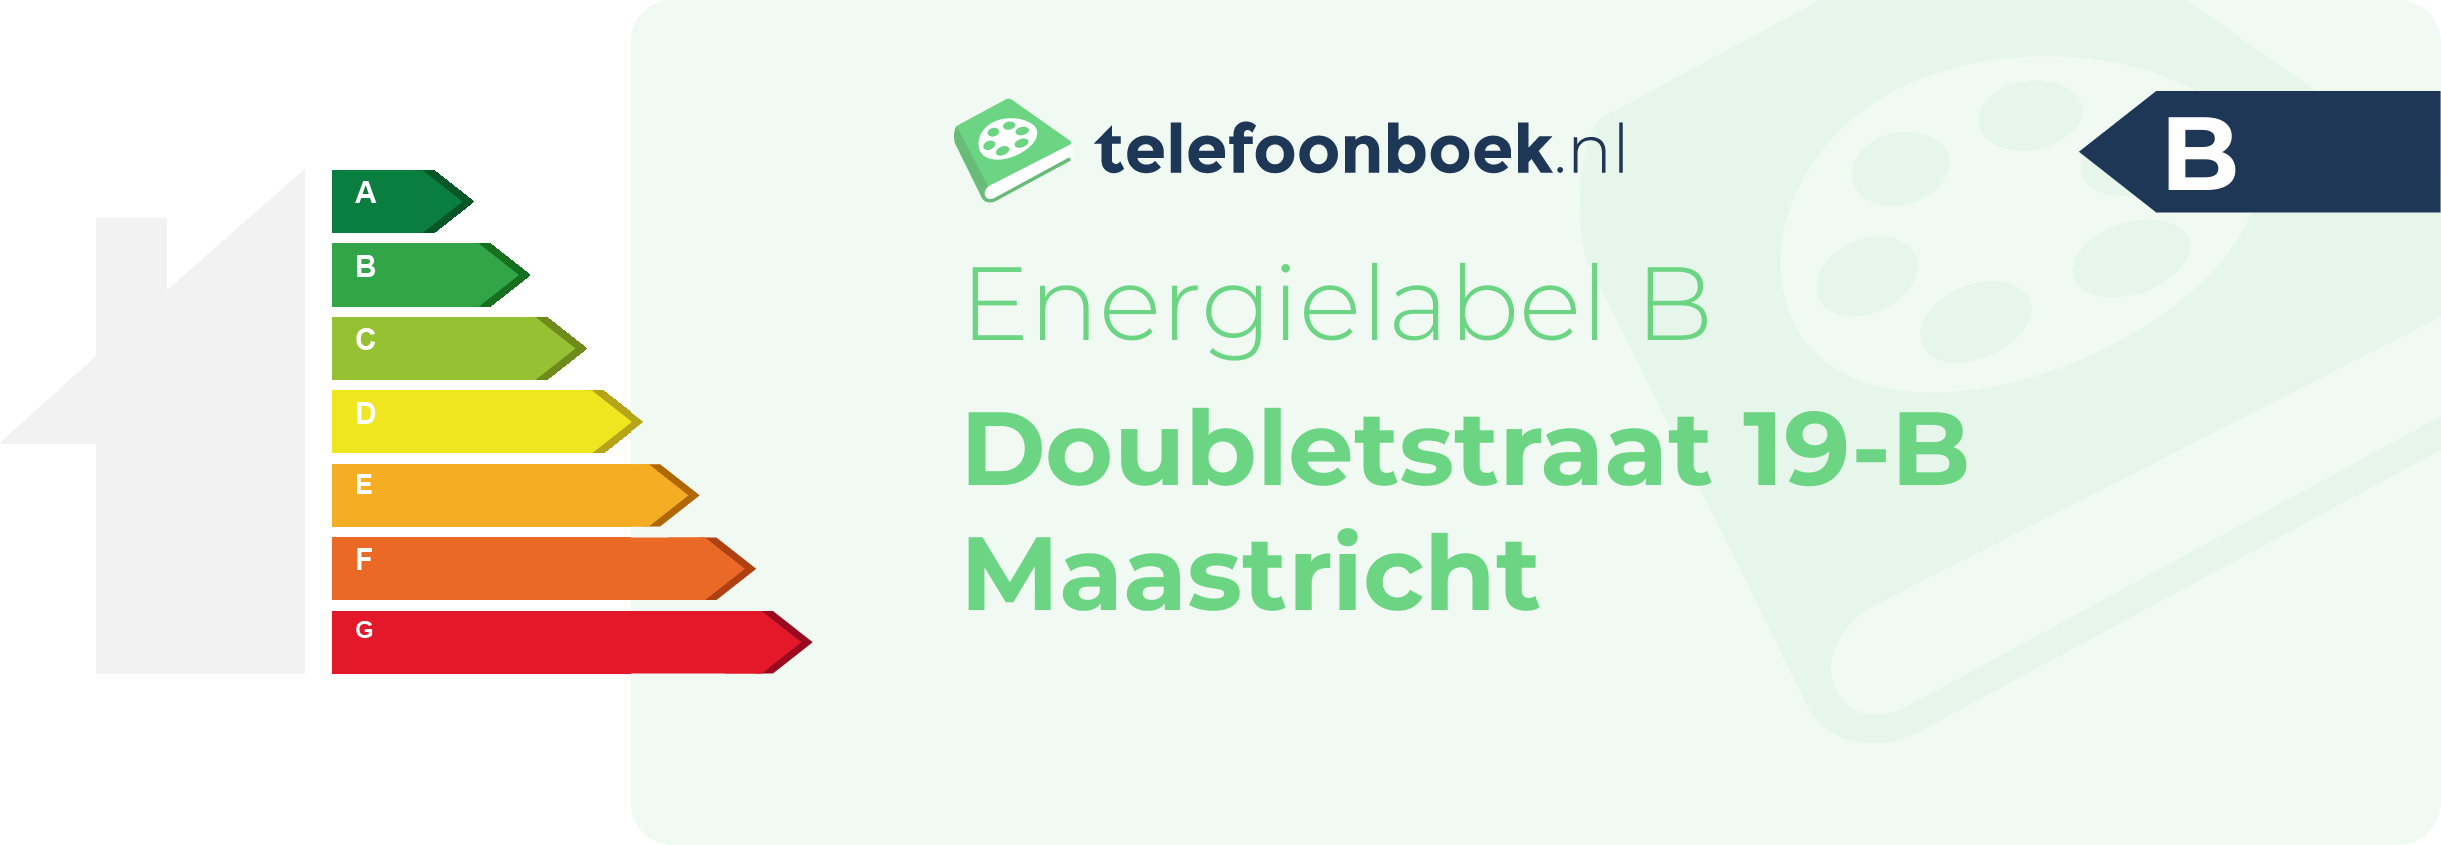 Energielabel Doubletstraat 19-B Maastricht